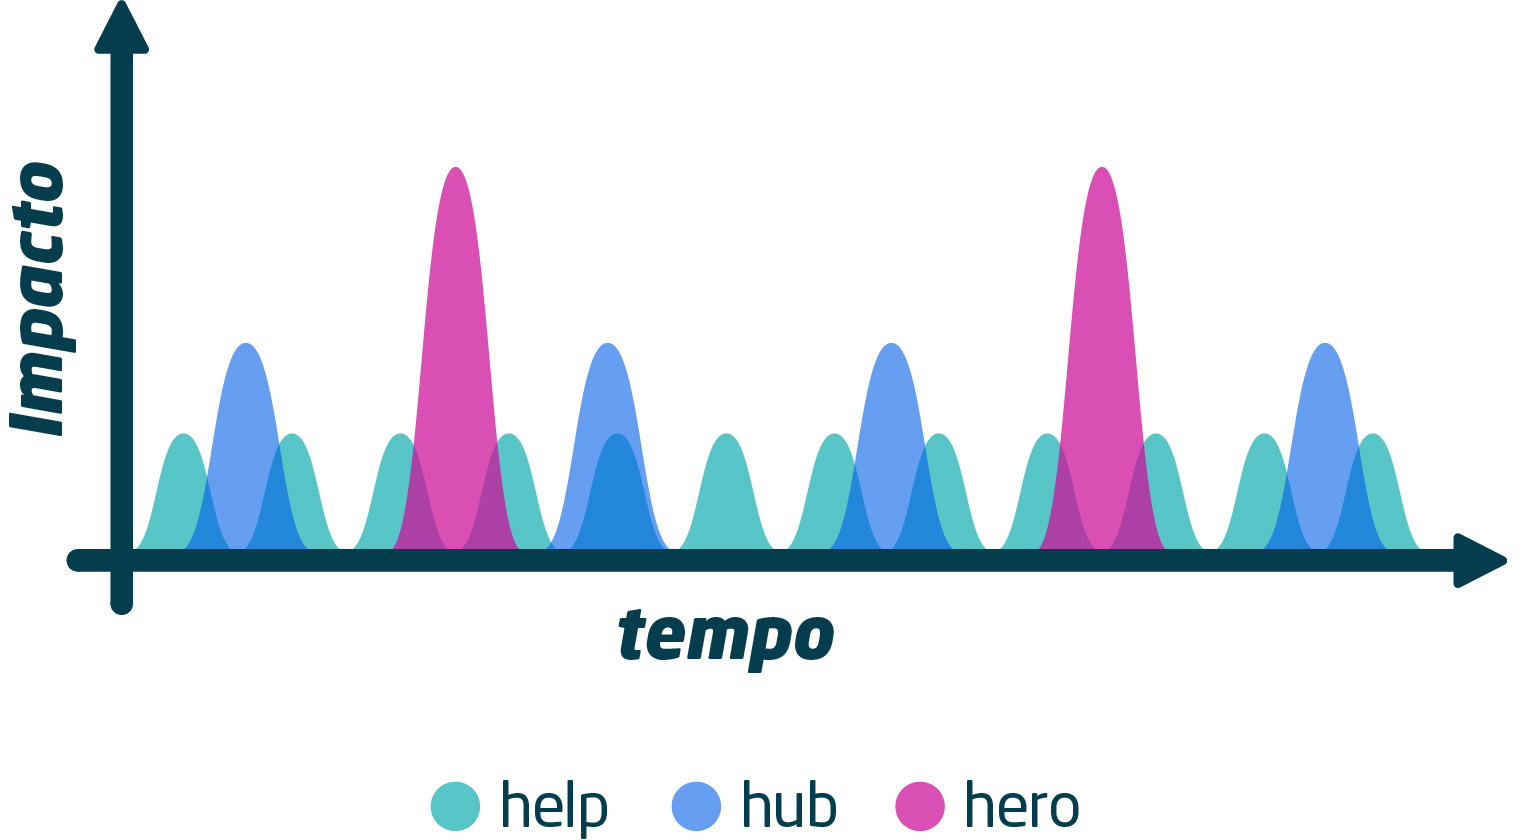 Canal no youtube: gráfico mostrando o tempo de permanência do usuário em 3 tipos de conteúdo: help, hub e hero